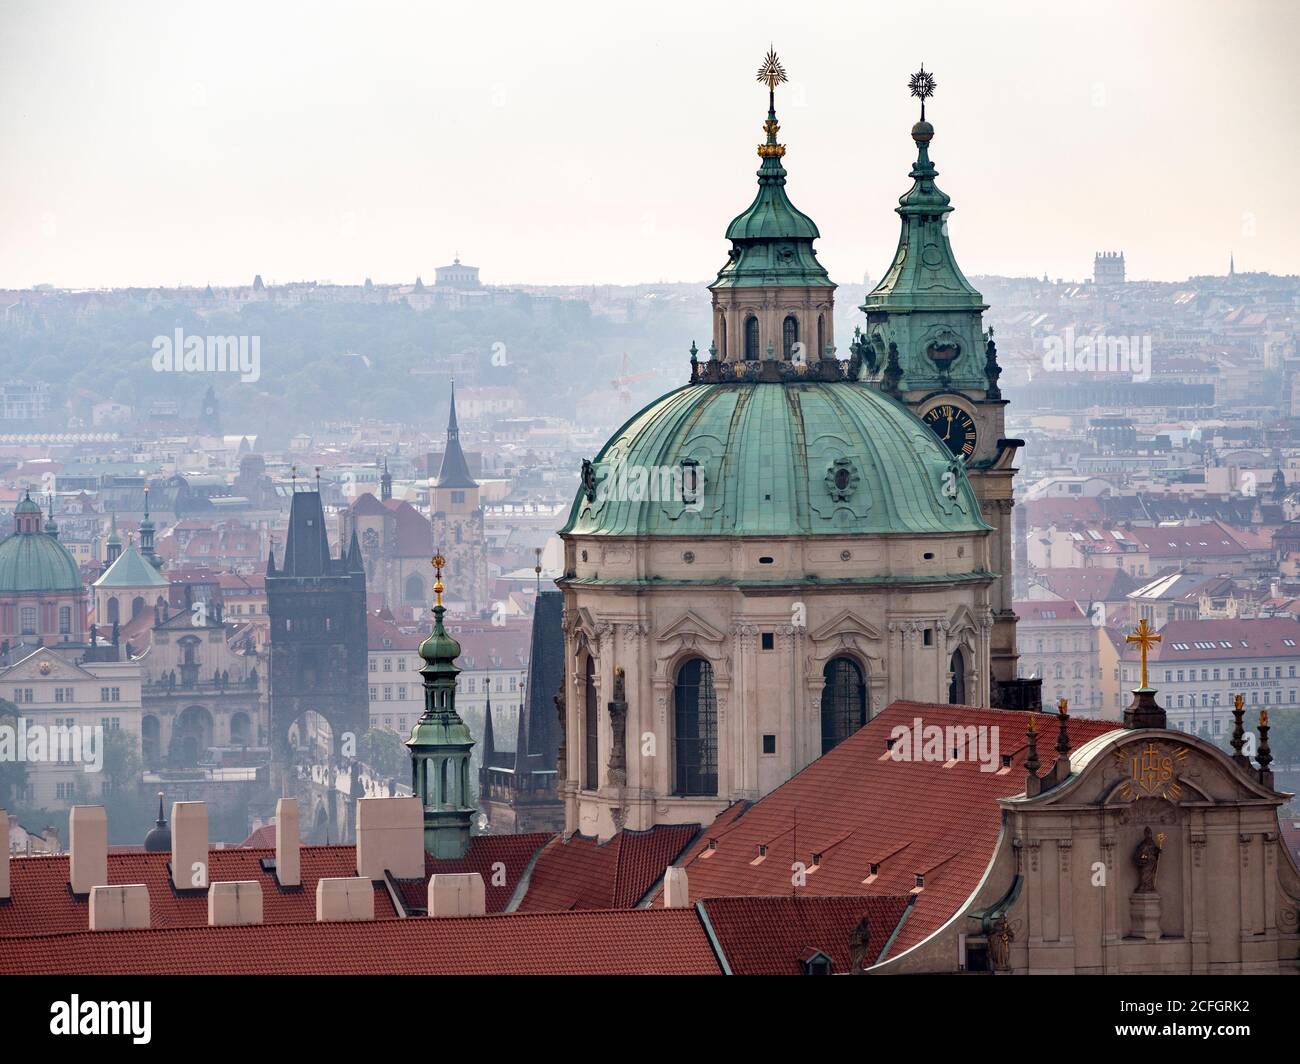 Prag von der Burg: Ein frühmorgens nebliger Überblick über die Stadt und ihre Türme vom Schlossgelände. Die Kuppel des St. Nikolaus dominiert das Vorland mit der Karlsbrücke in der Mitte. Stockfoto